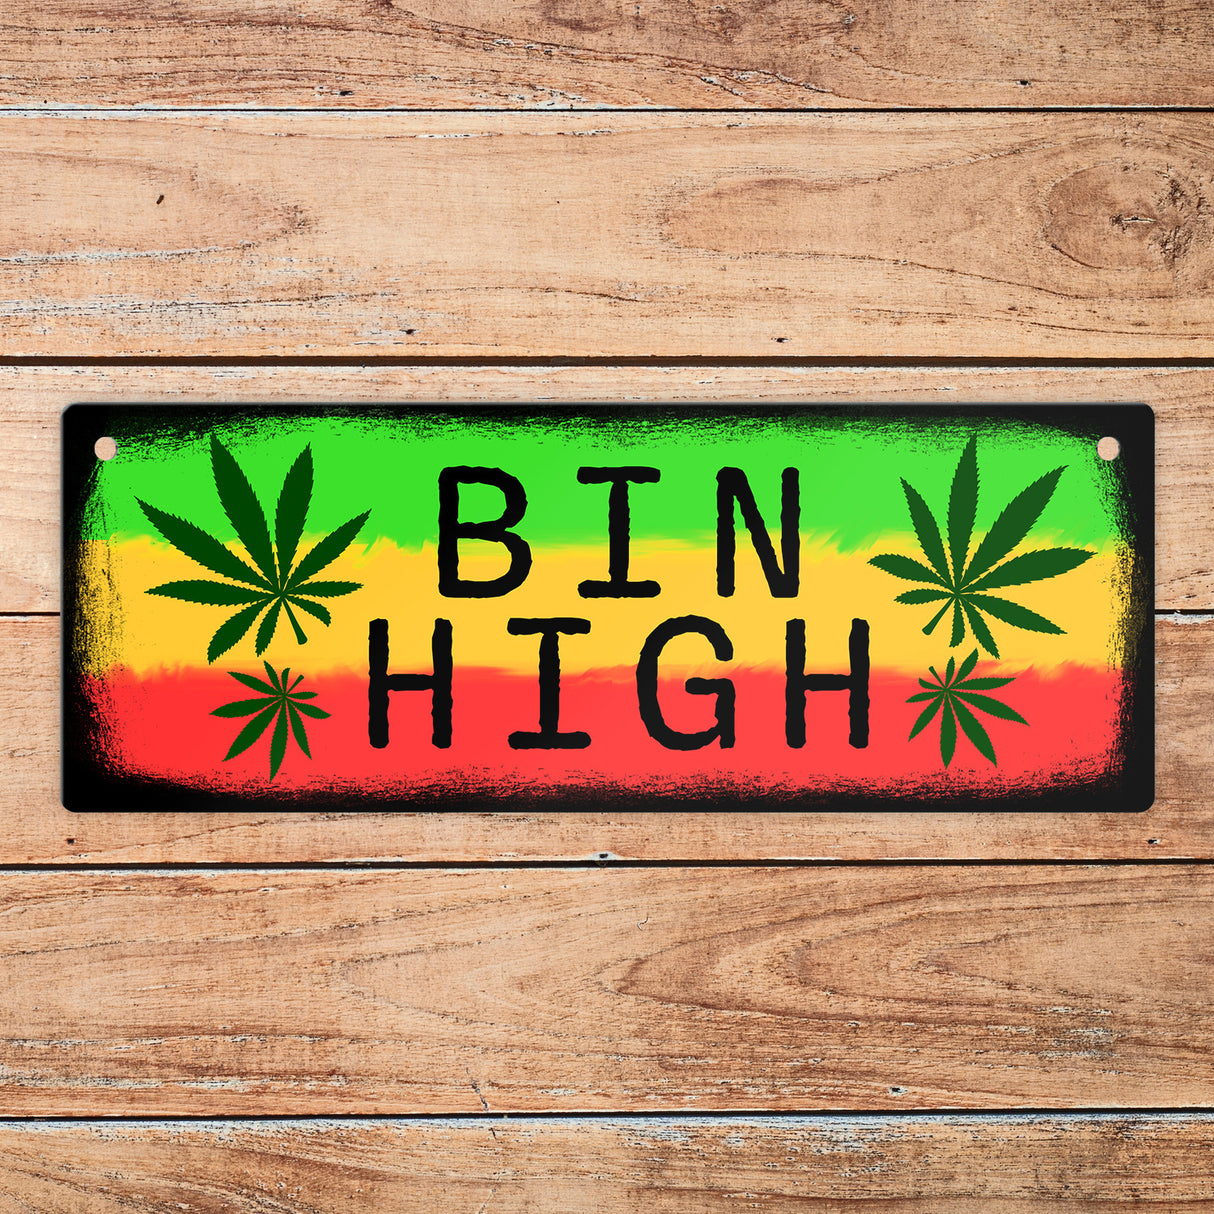 Bin High oder Bin da Wendeschild mit Marihuanablatt